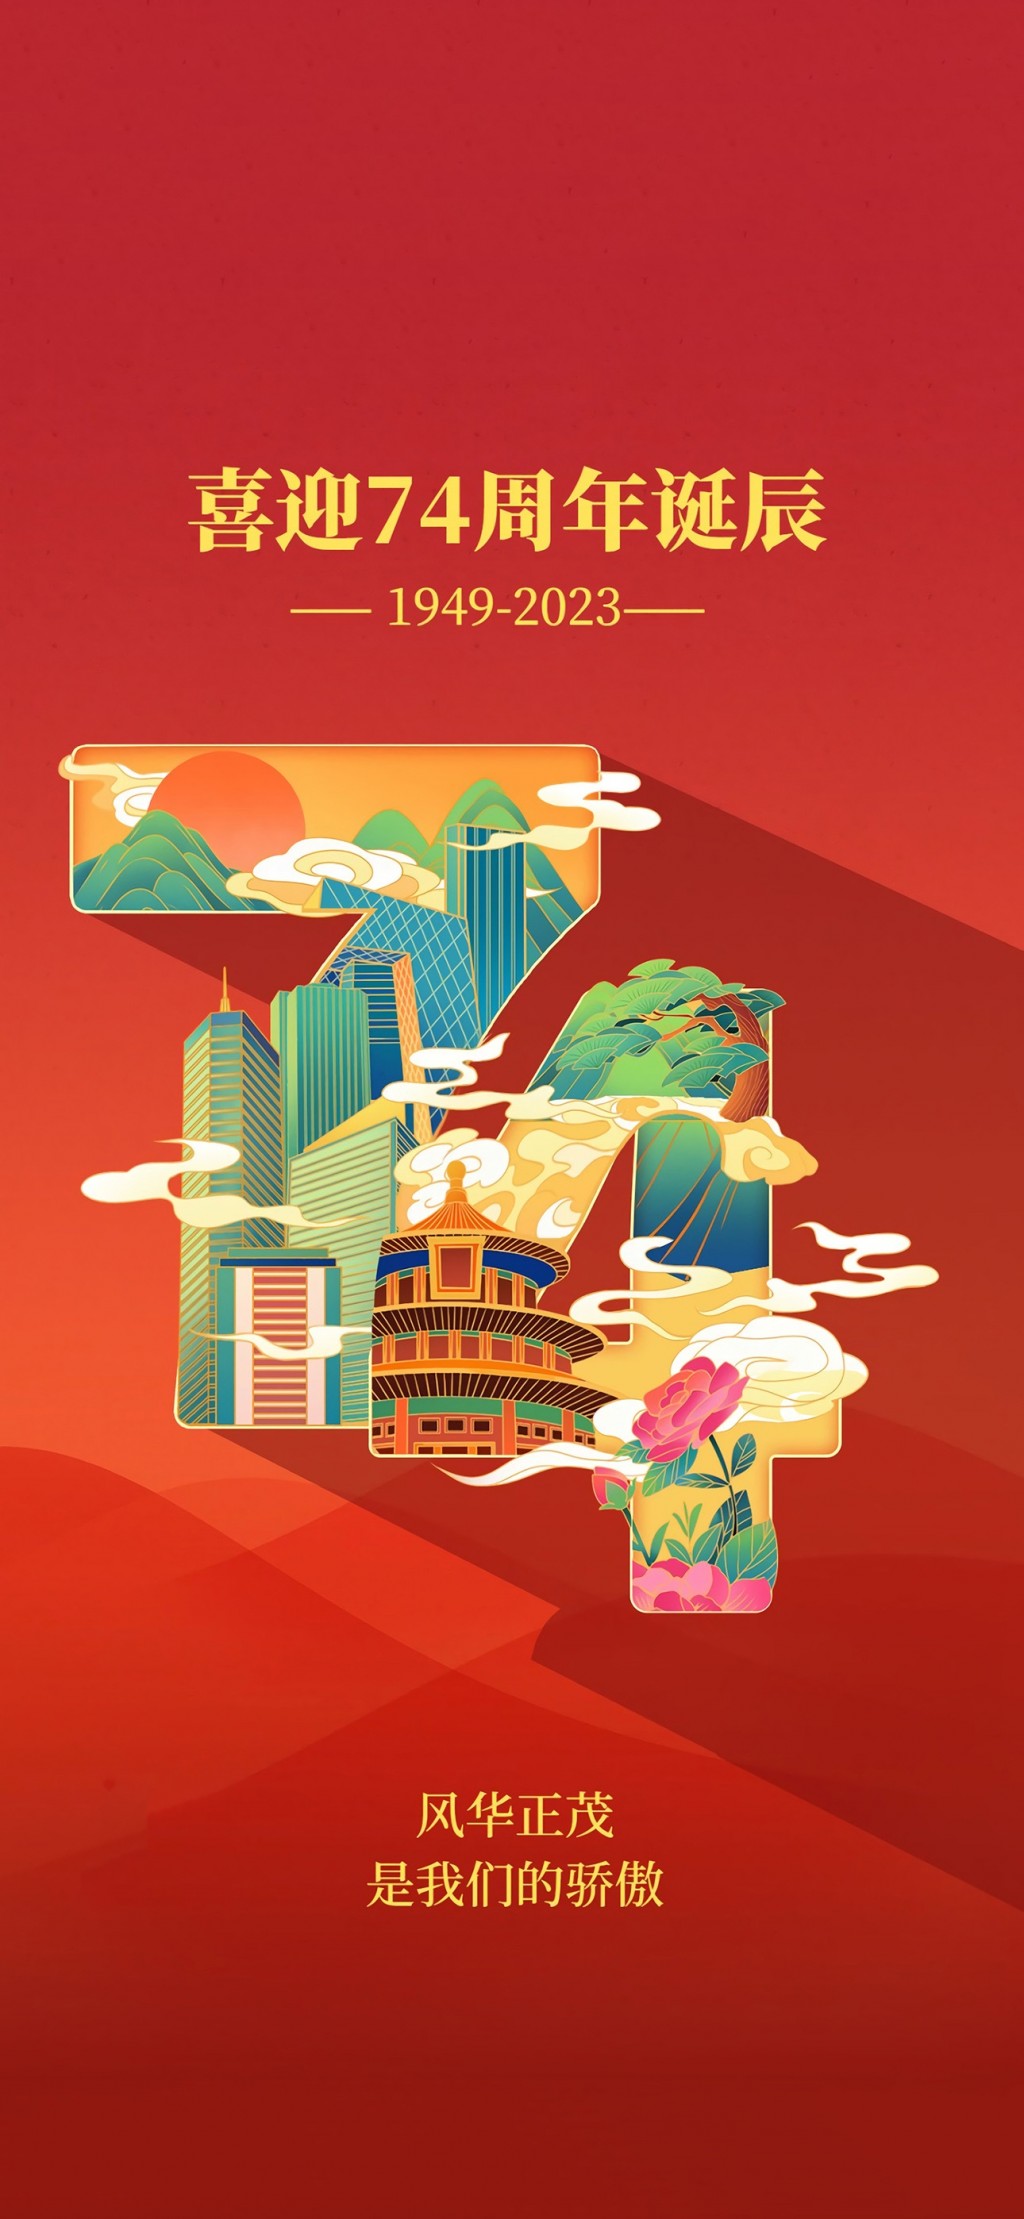 国庆节祝福祖国节日插画手机壁纸